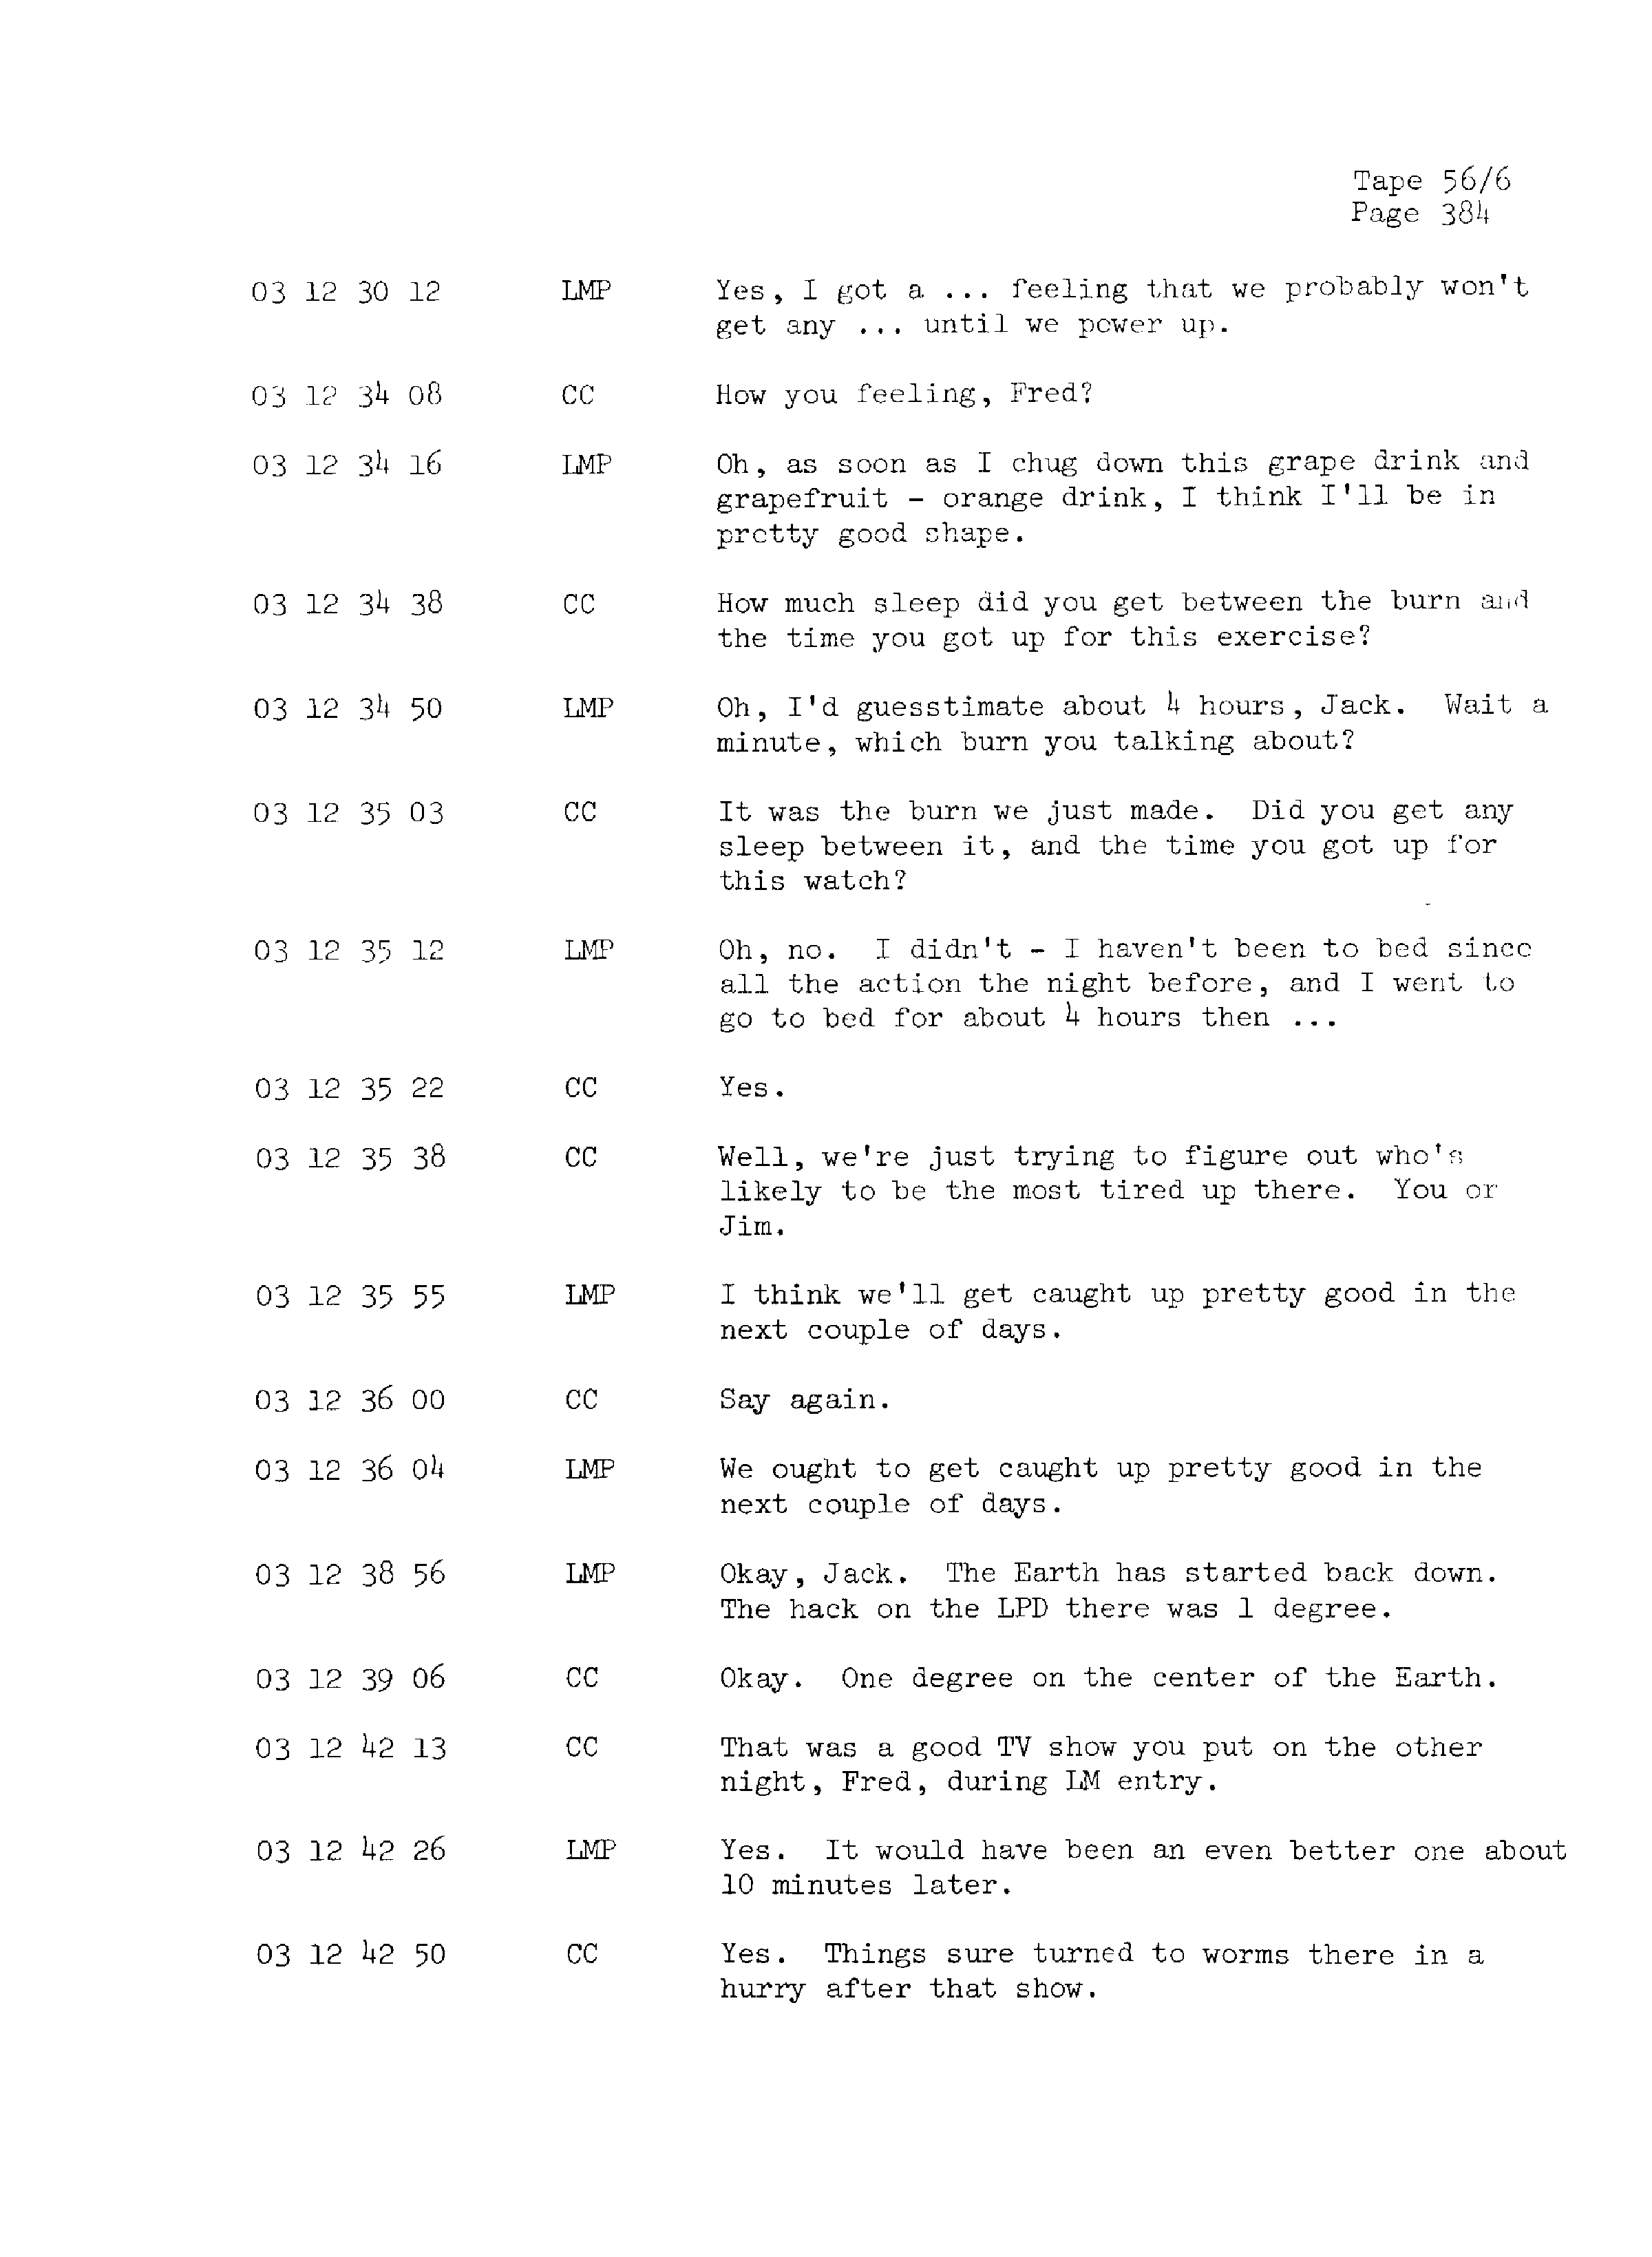 Page 391 of Apollo 13’s original transcript